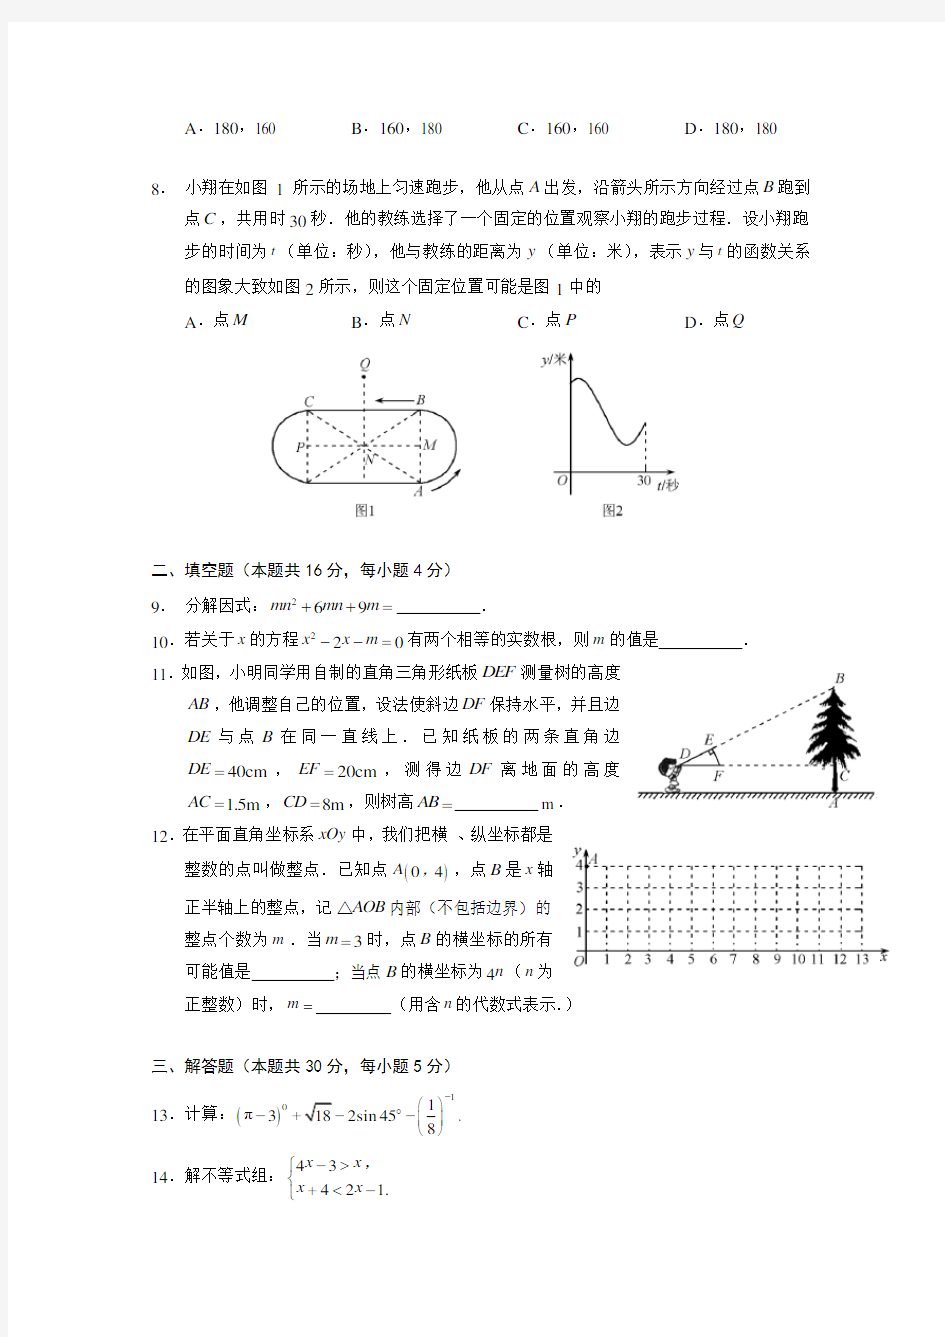 2012年北京中考数学试题及答案